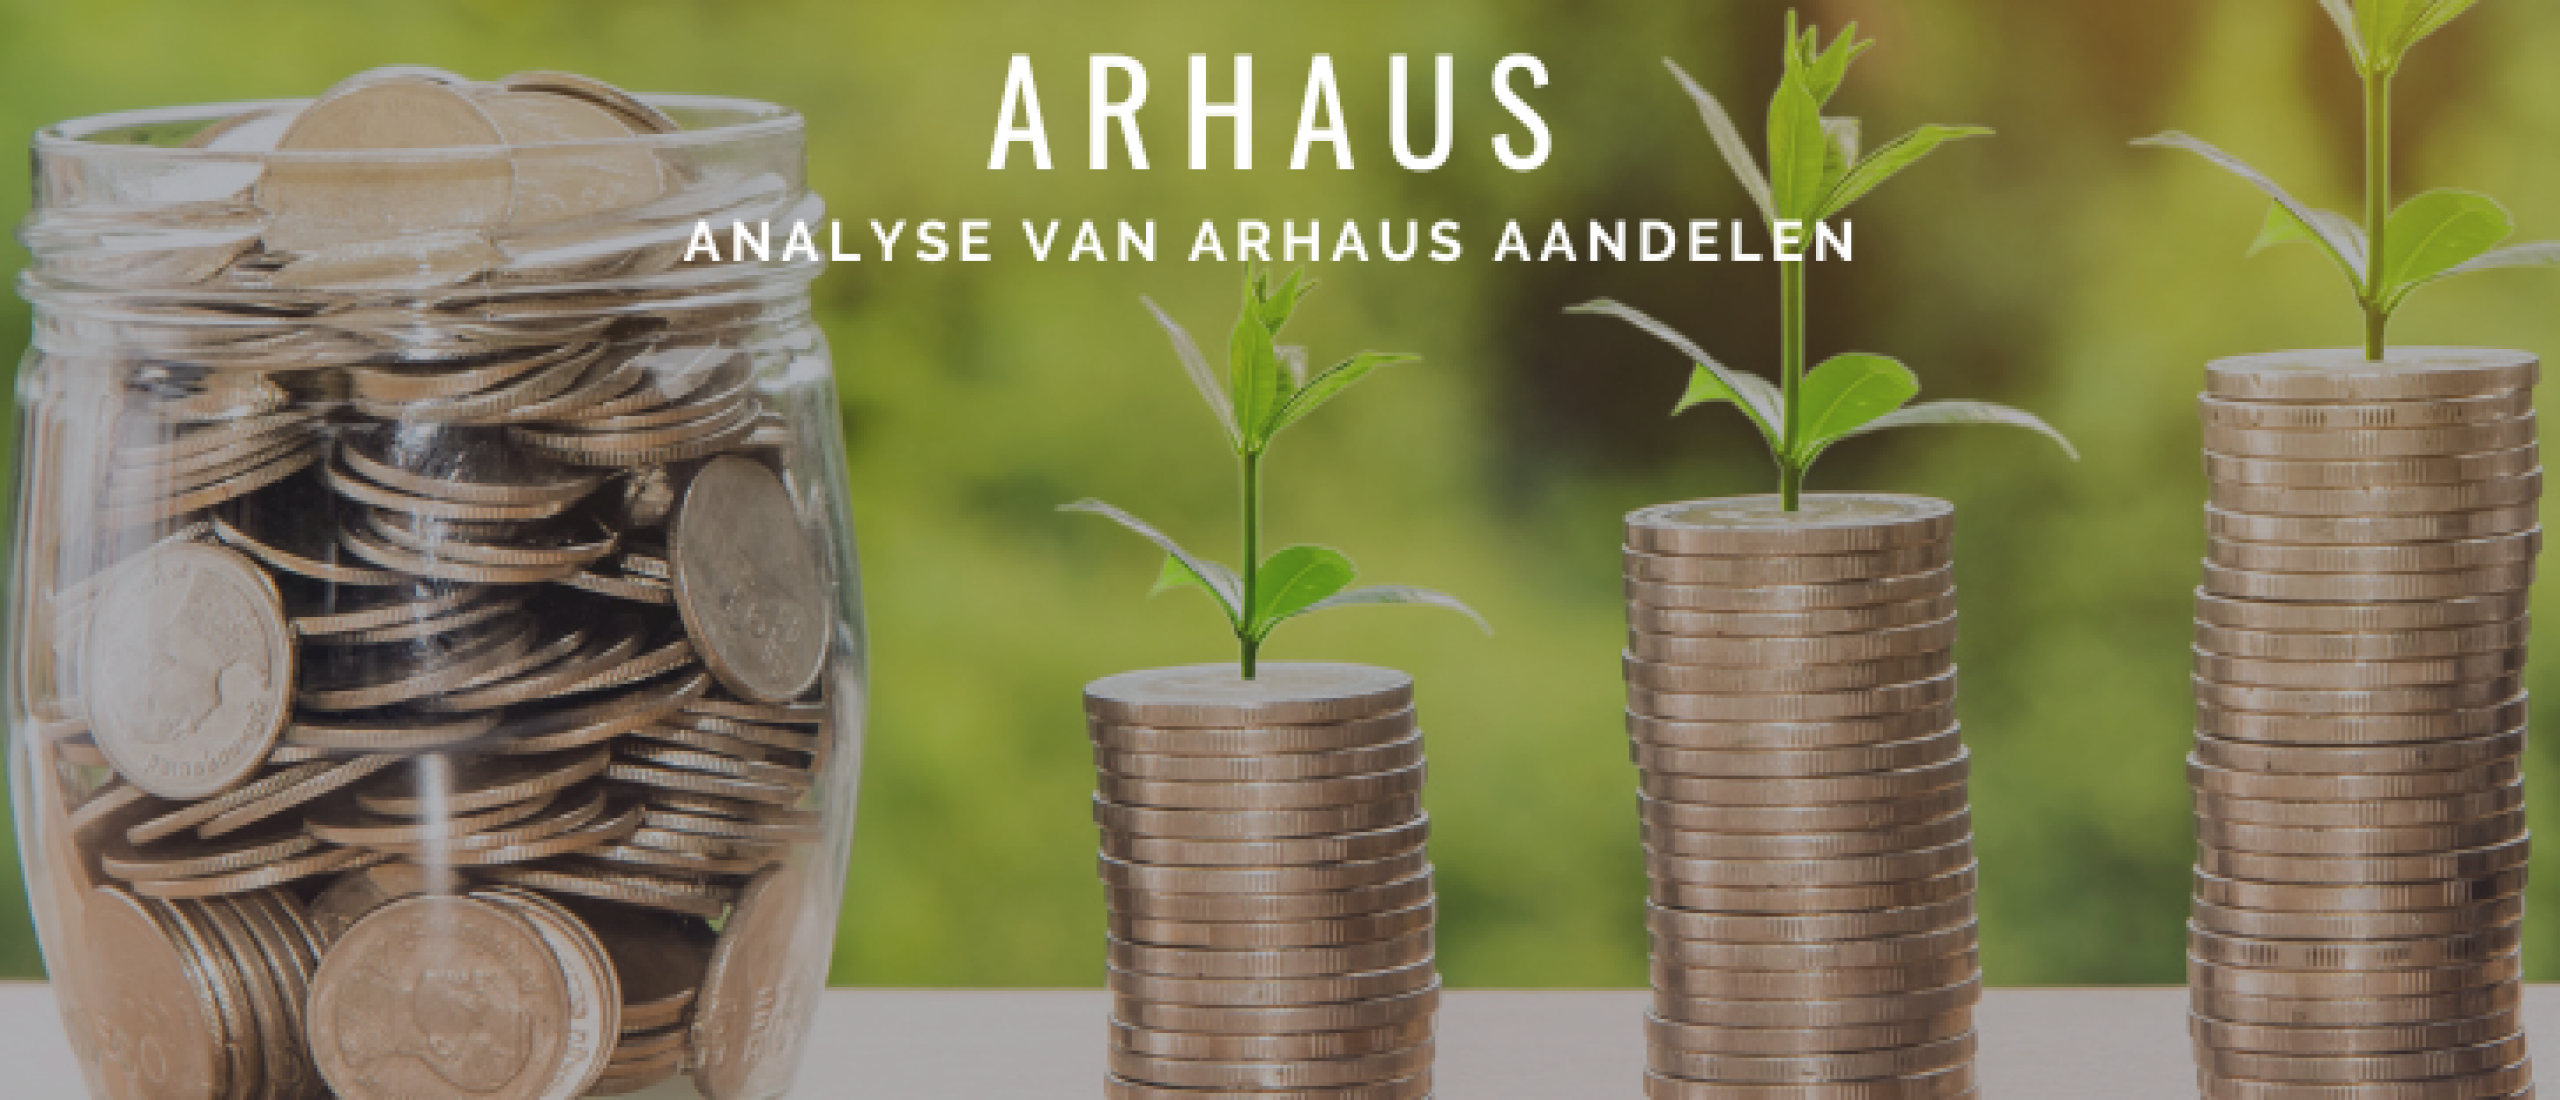 Arhaus Aandelen kopen? Analyse +63% Groei | Happy Investors